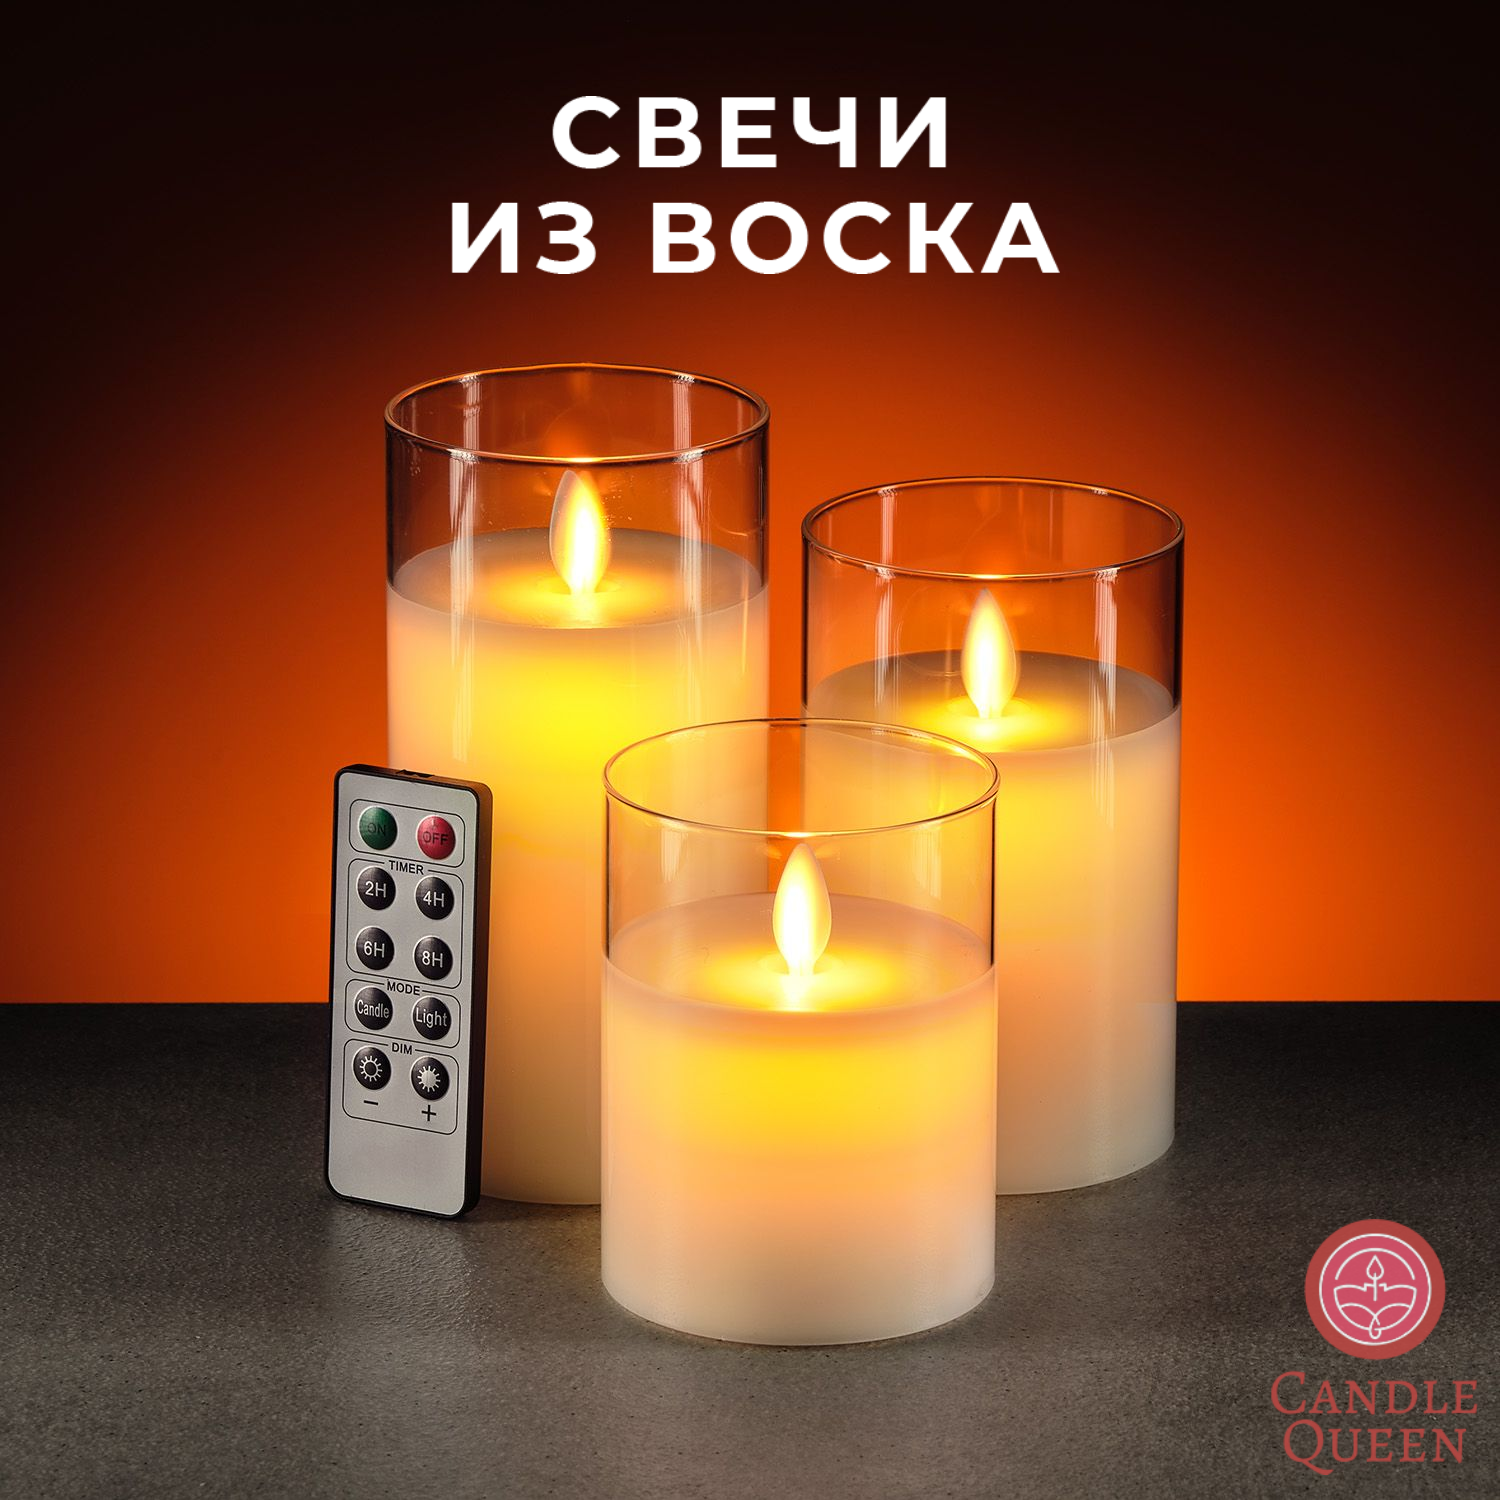 Диодные восковые декоративные свечи на батарейках в стекле CandleQueen RSG1901, 3 шт